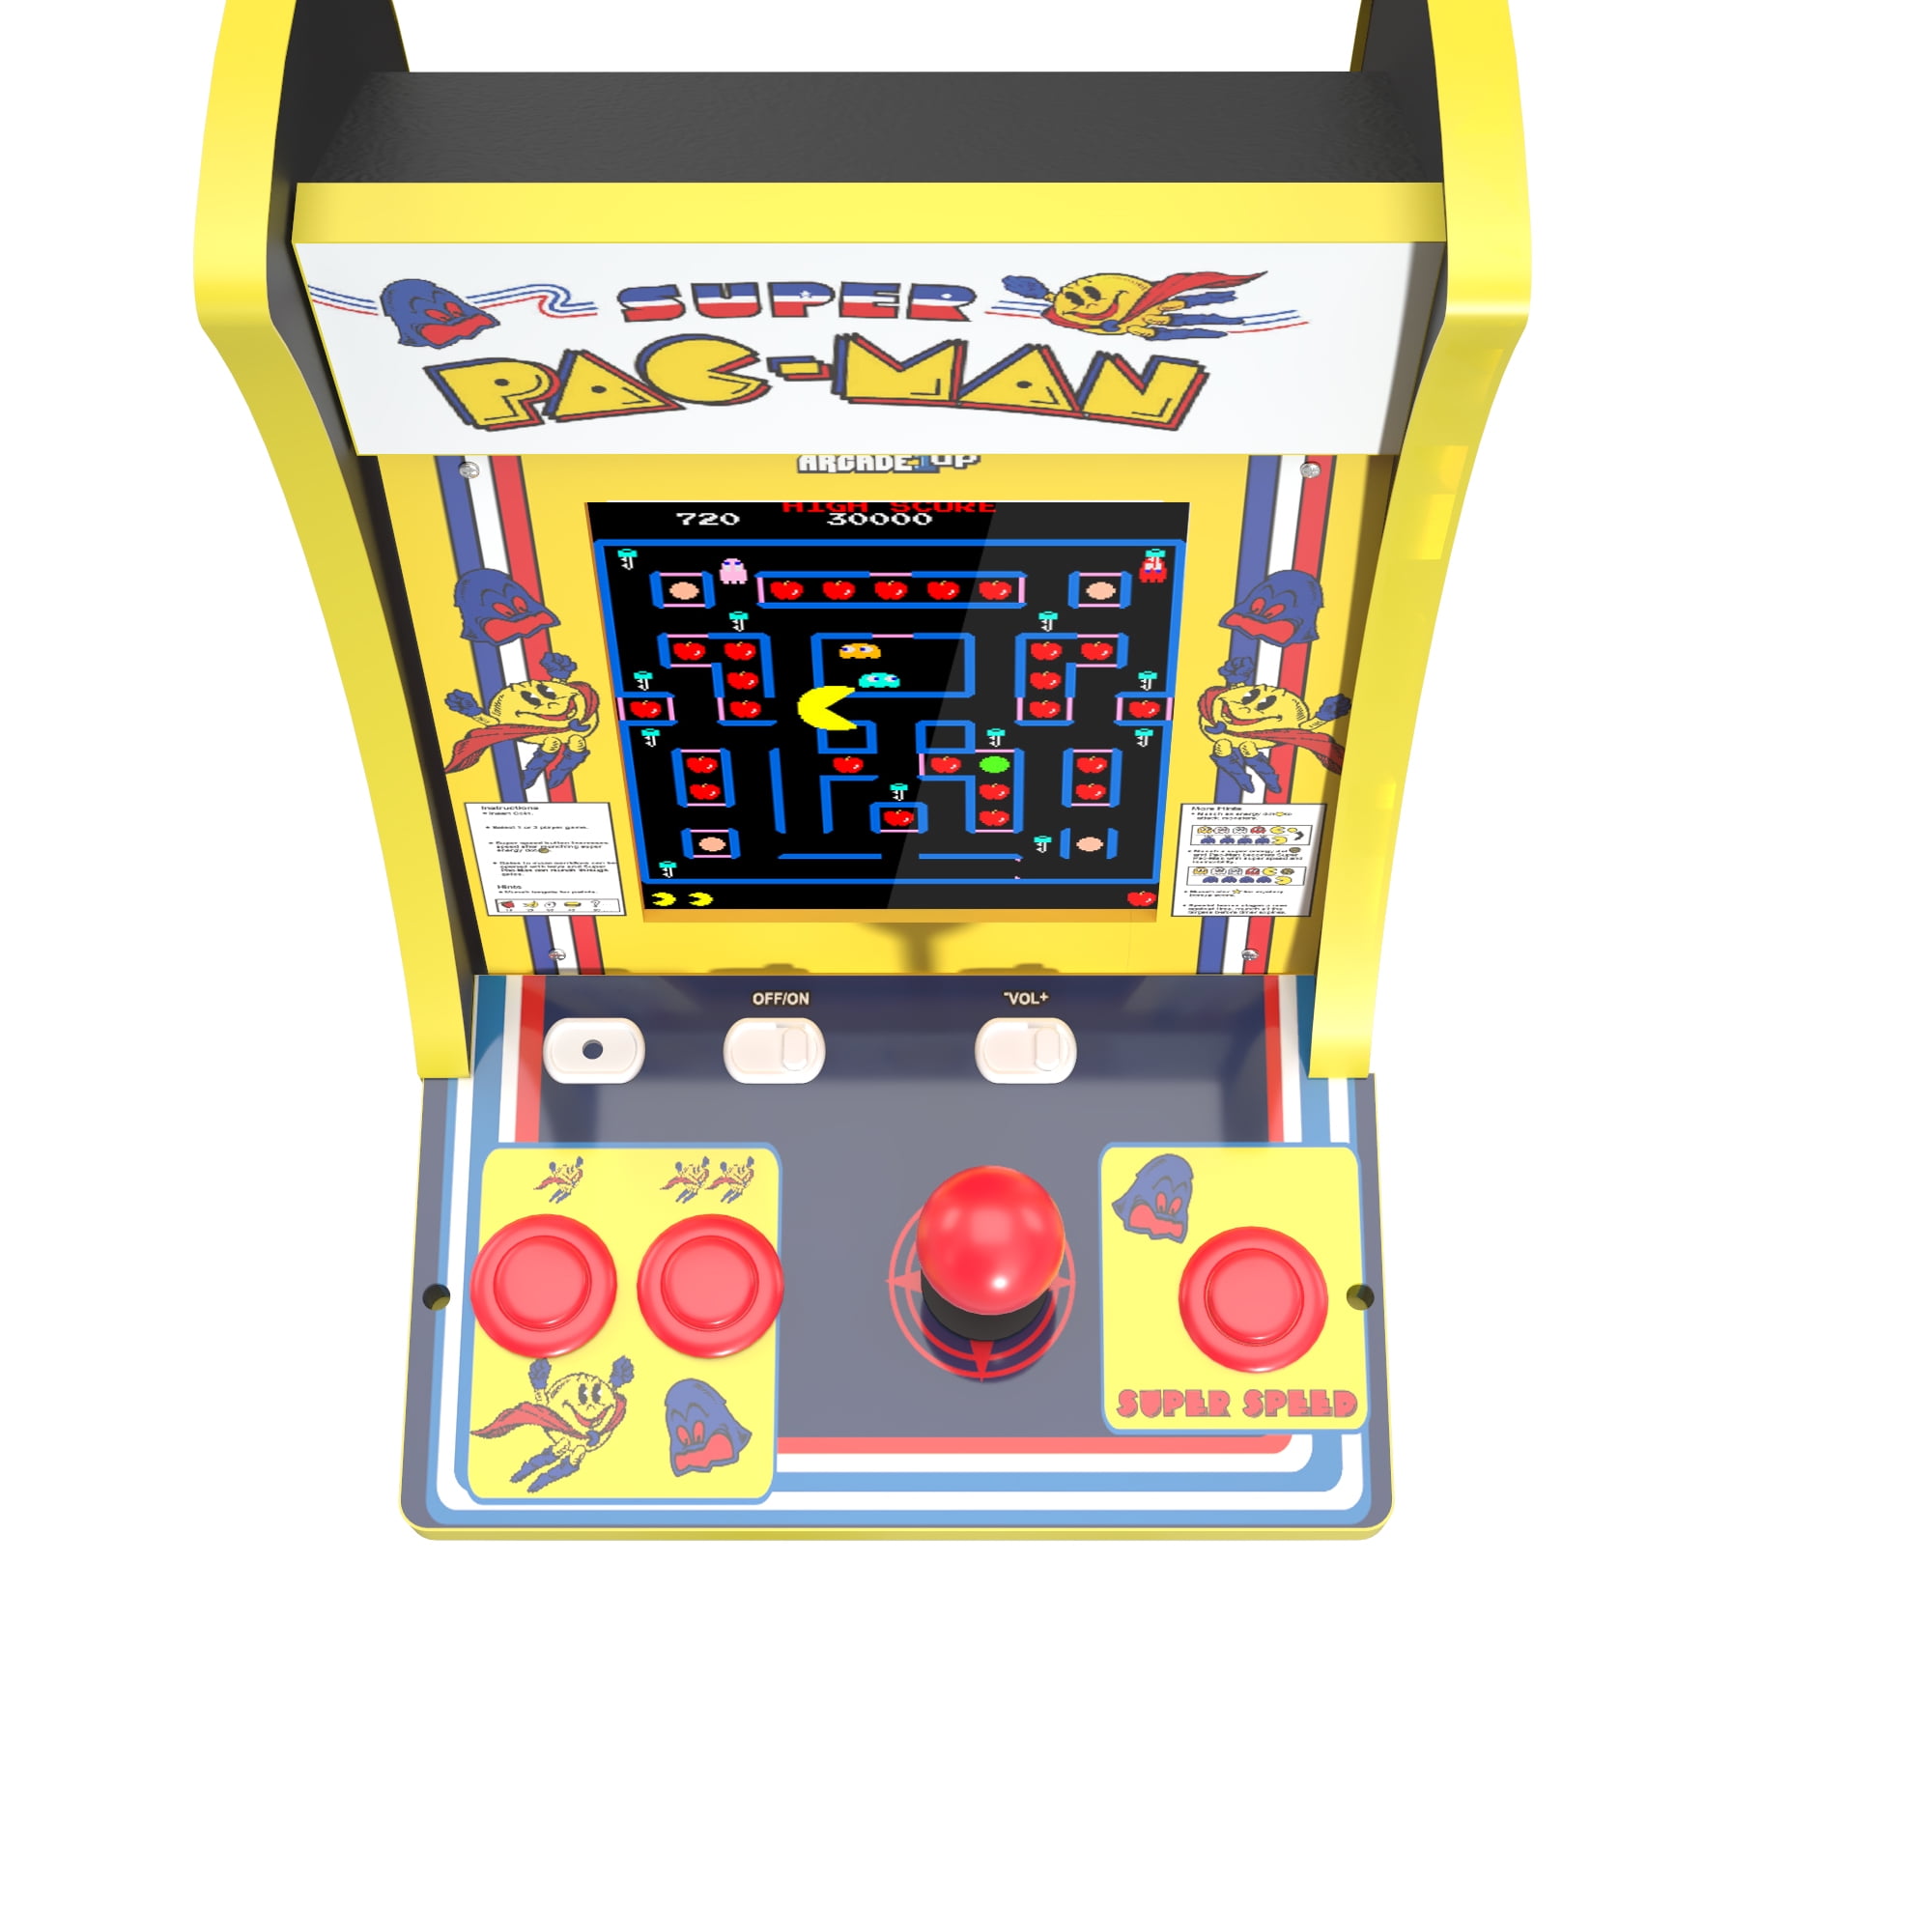 Borne arcade Pac-Man Countercade